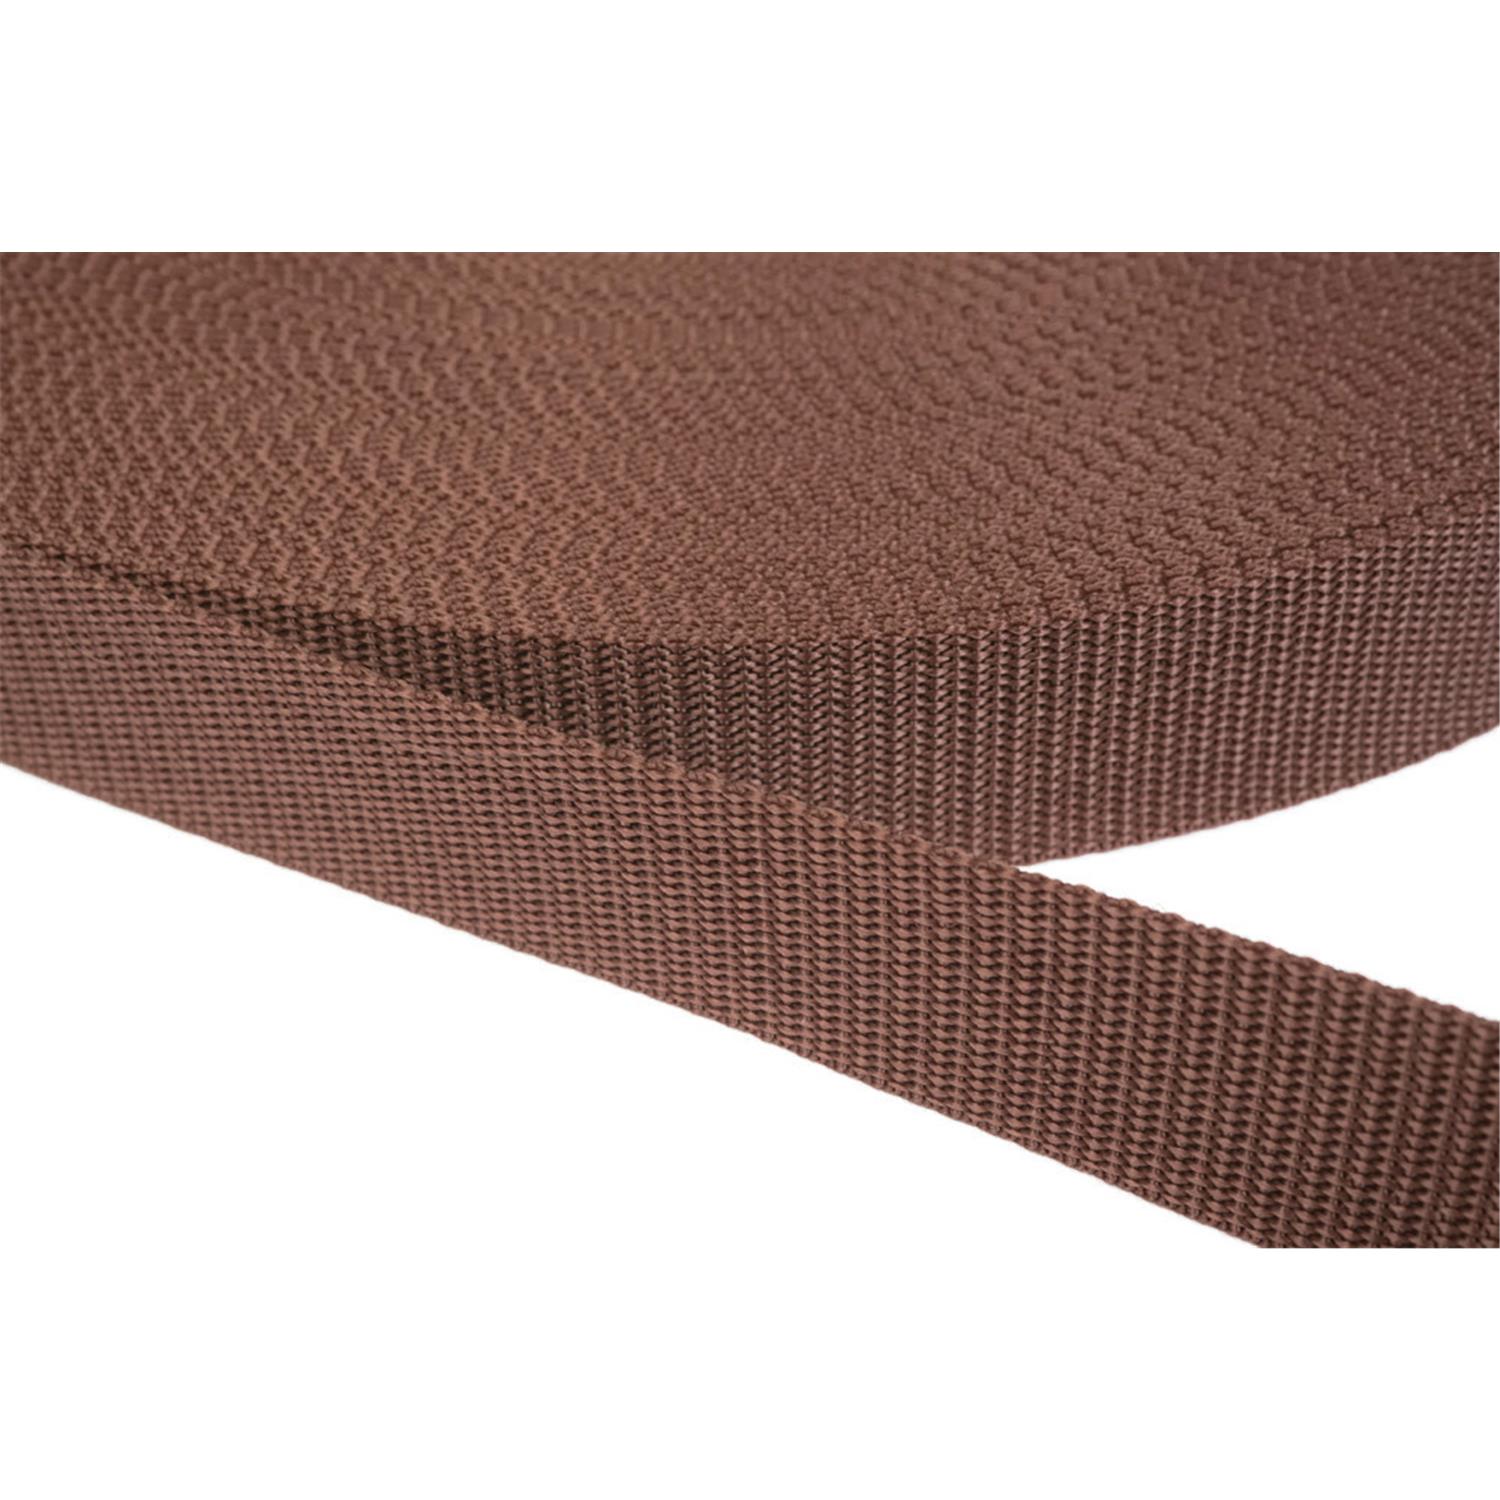 Gurtband 50mm breit aus Polypropylen in 41 Farben 07 - braun 50 Meter